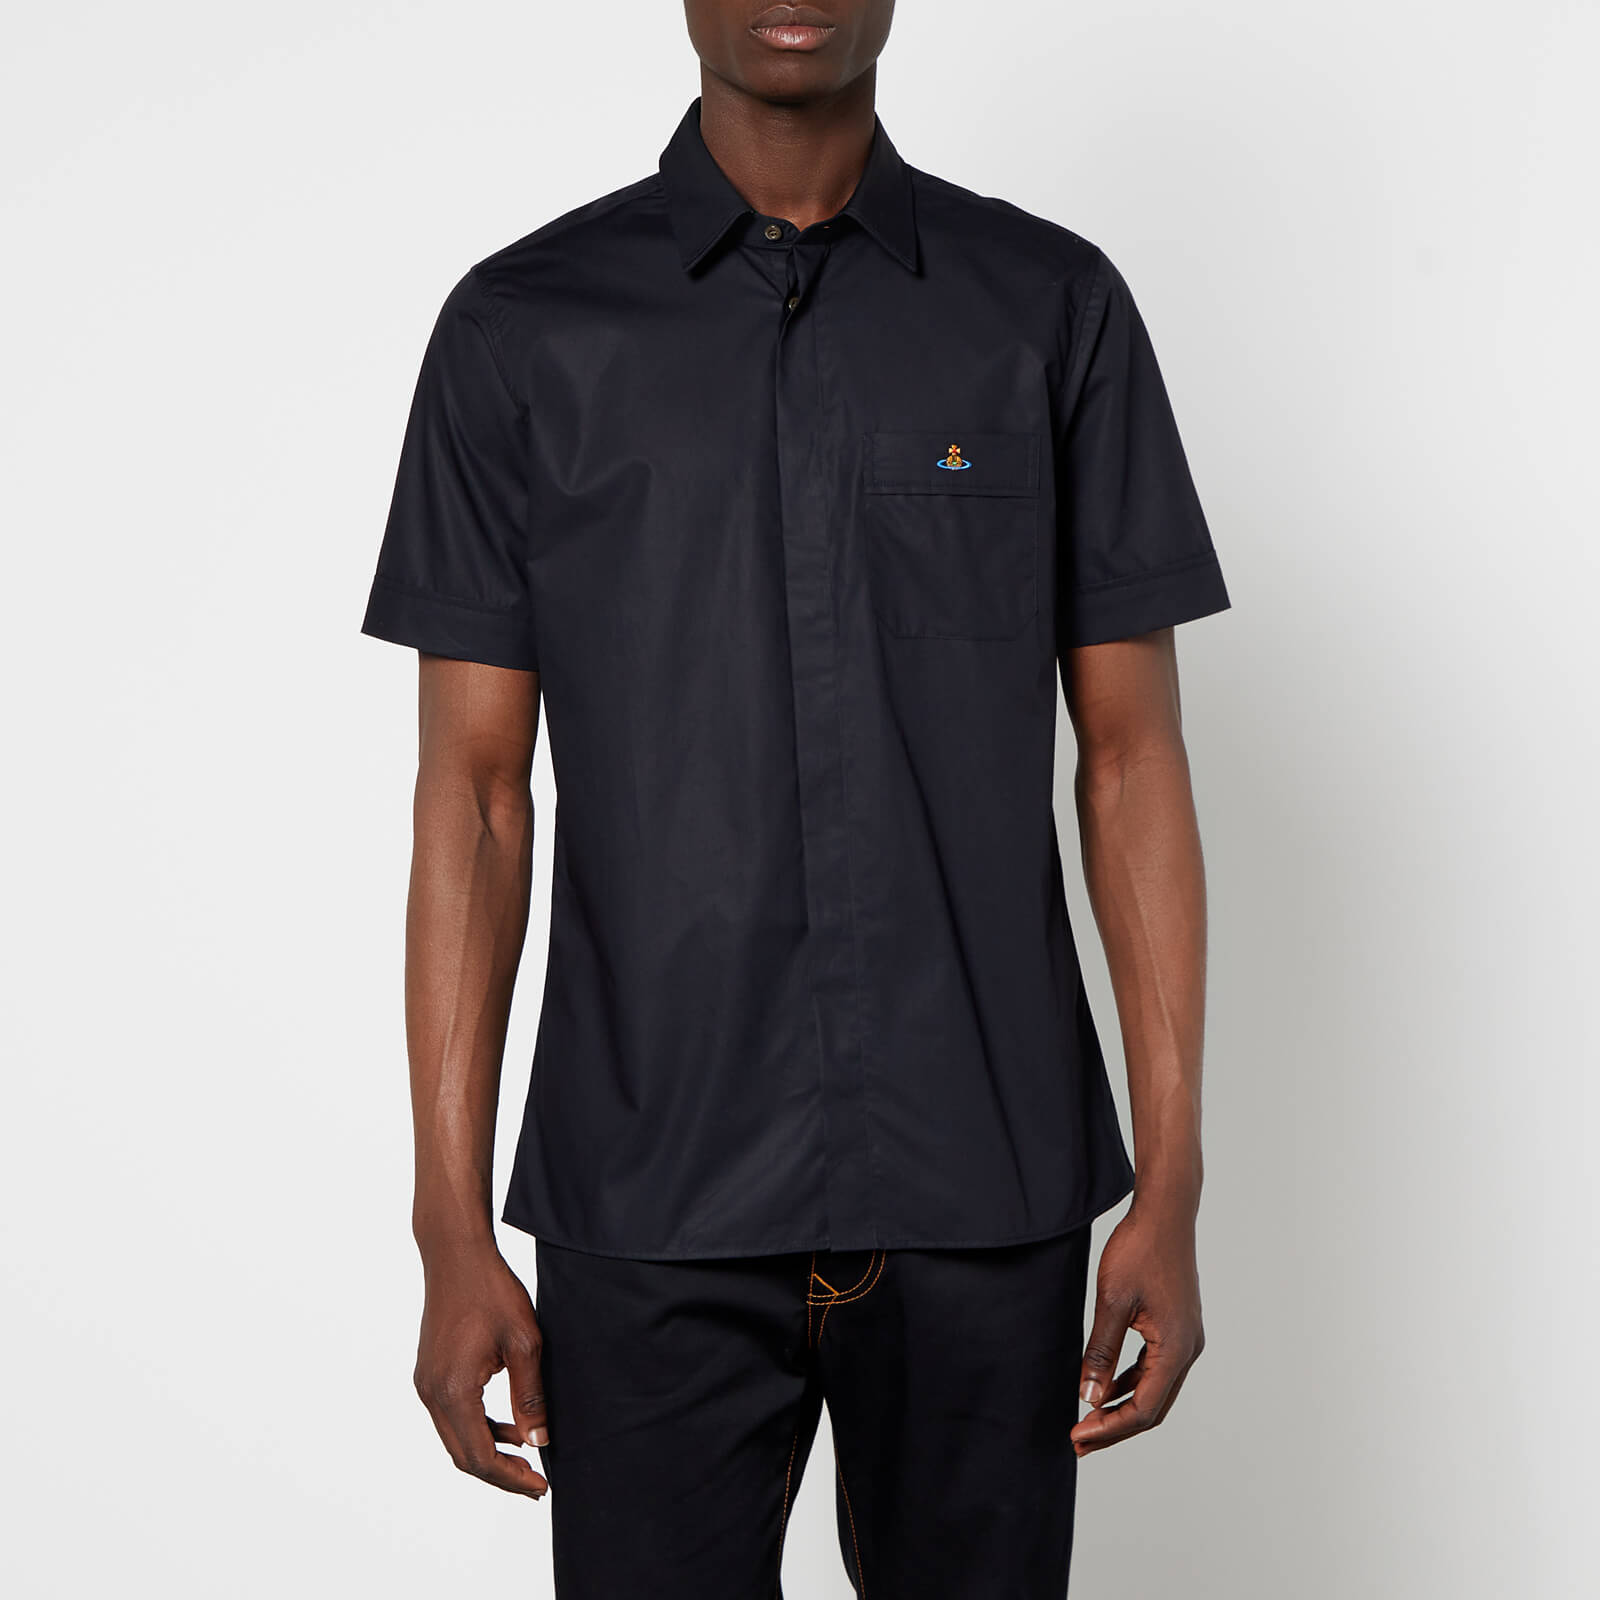 Vivienne Westwood Men's Classic Short Sleeve Shirt - Black - 46/S